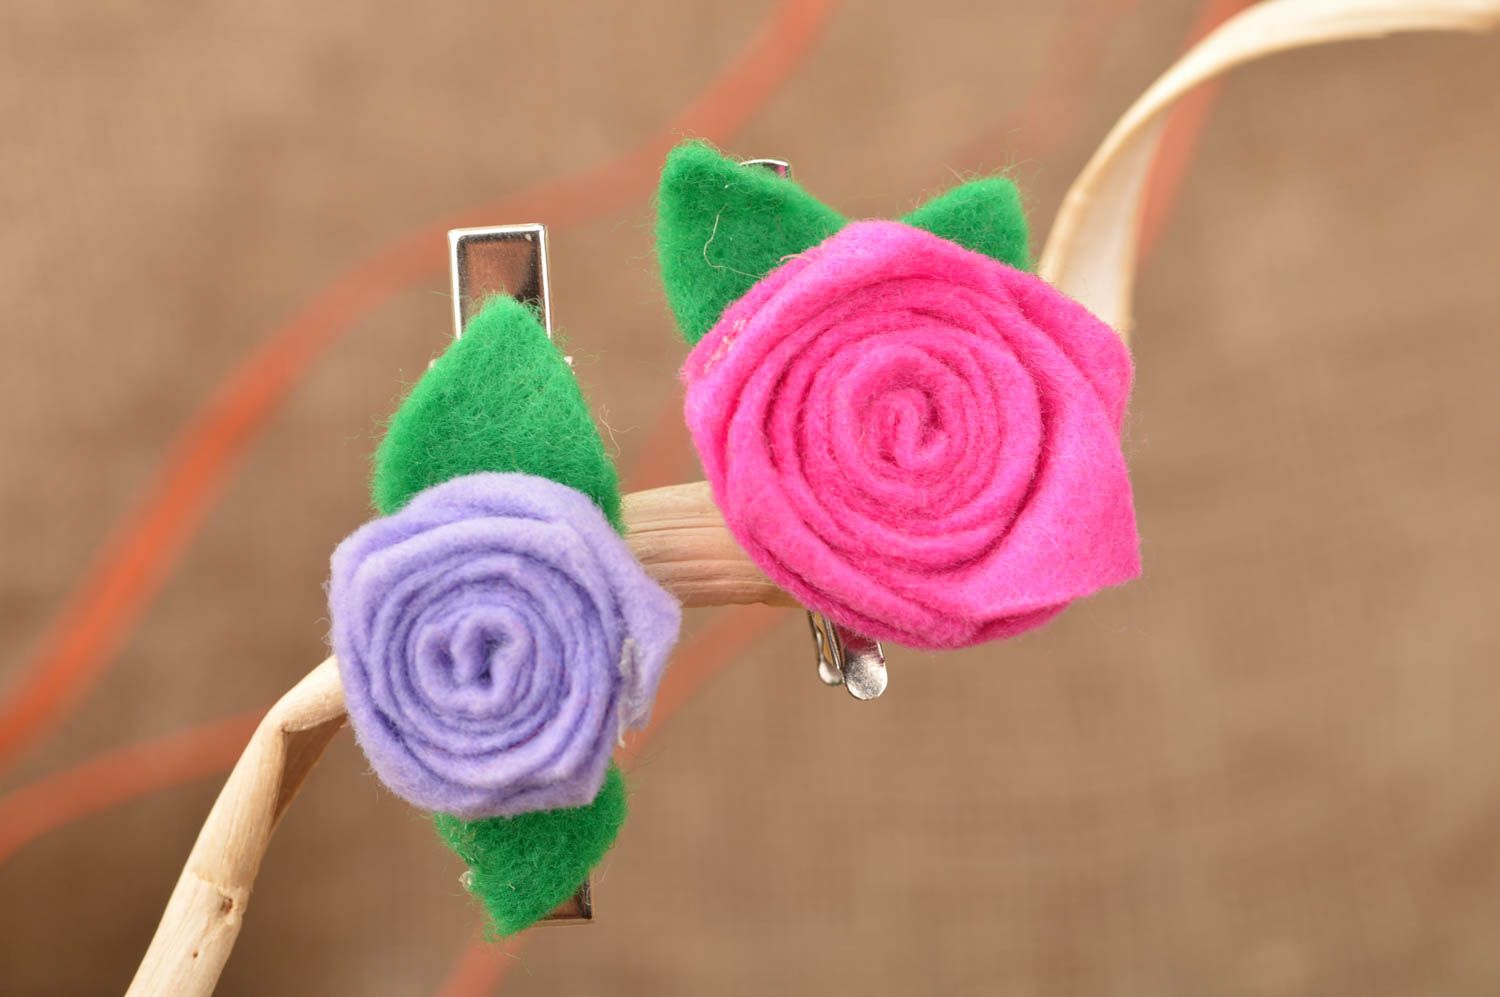 Фетровые заколки для волос в виде цветков набор 2 штуки ручной работы Розы фото 1